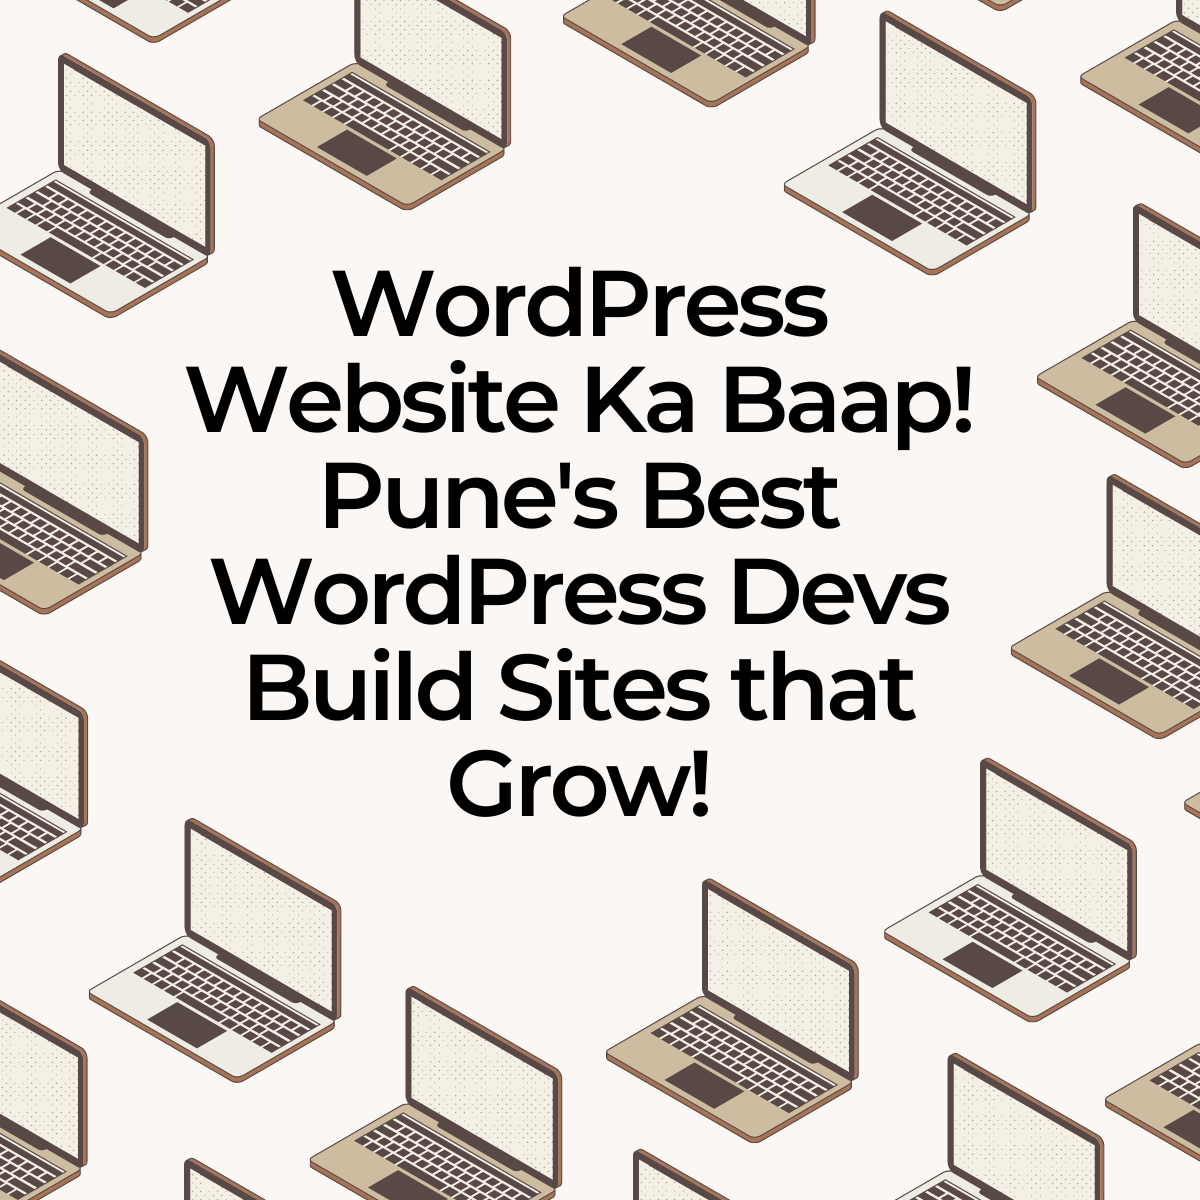 WordPress Website Ka Baap! Pune's Best WordPress Devs Build Sites that Grow!